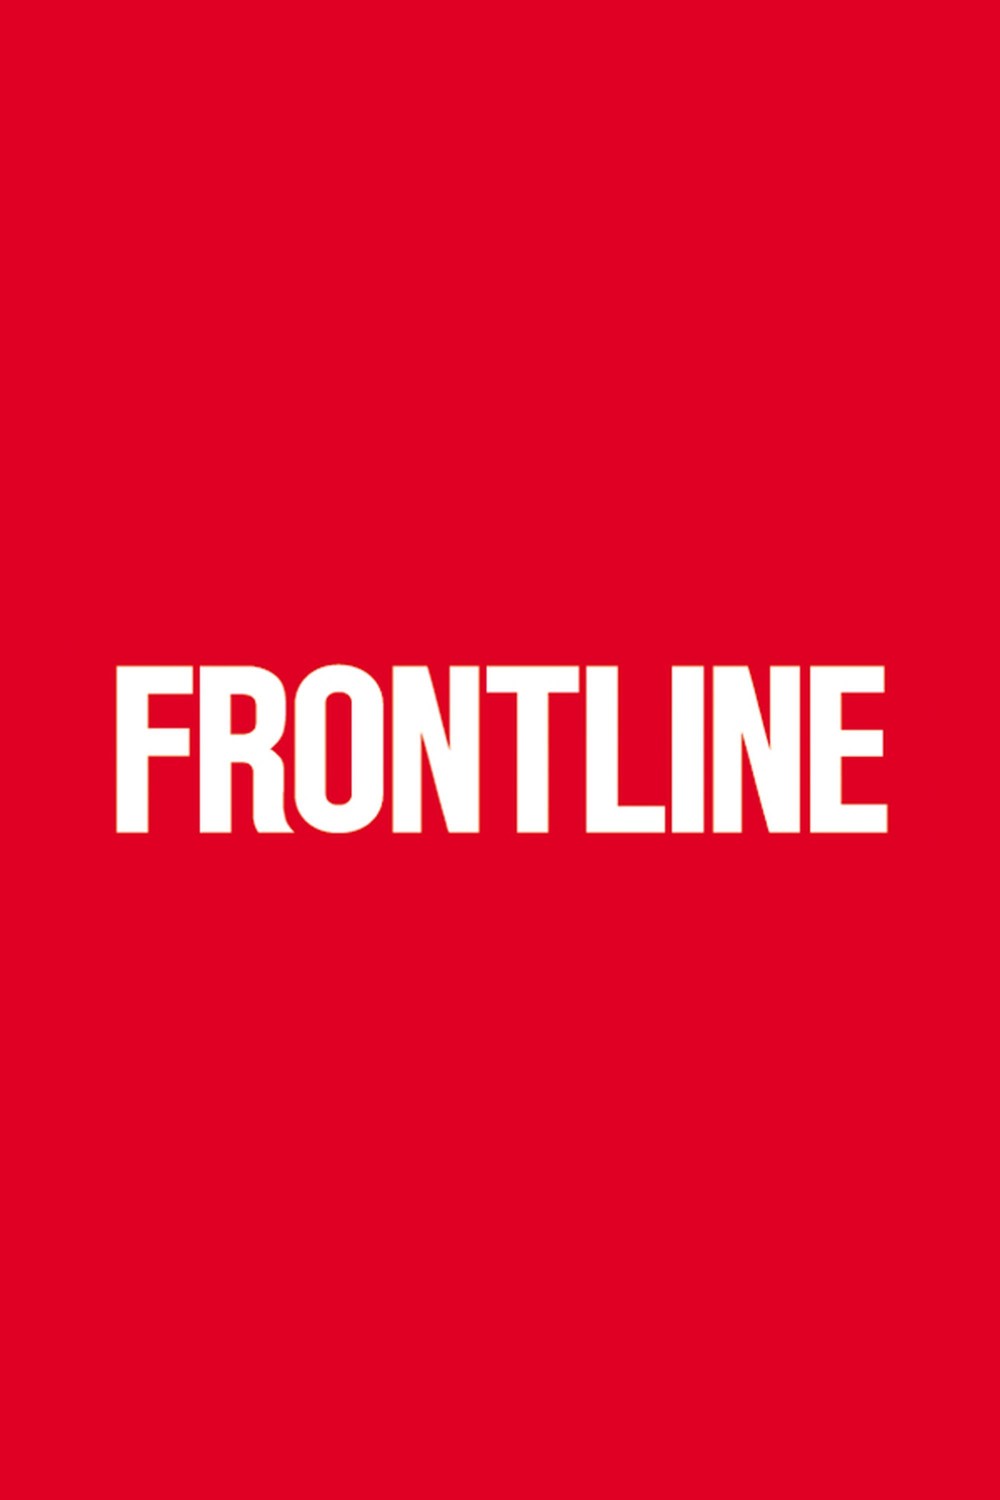 Frontline S42E01 Israels Second Front [1080p] (x265) 593daa6e36ce639a5edc29508f9e2993